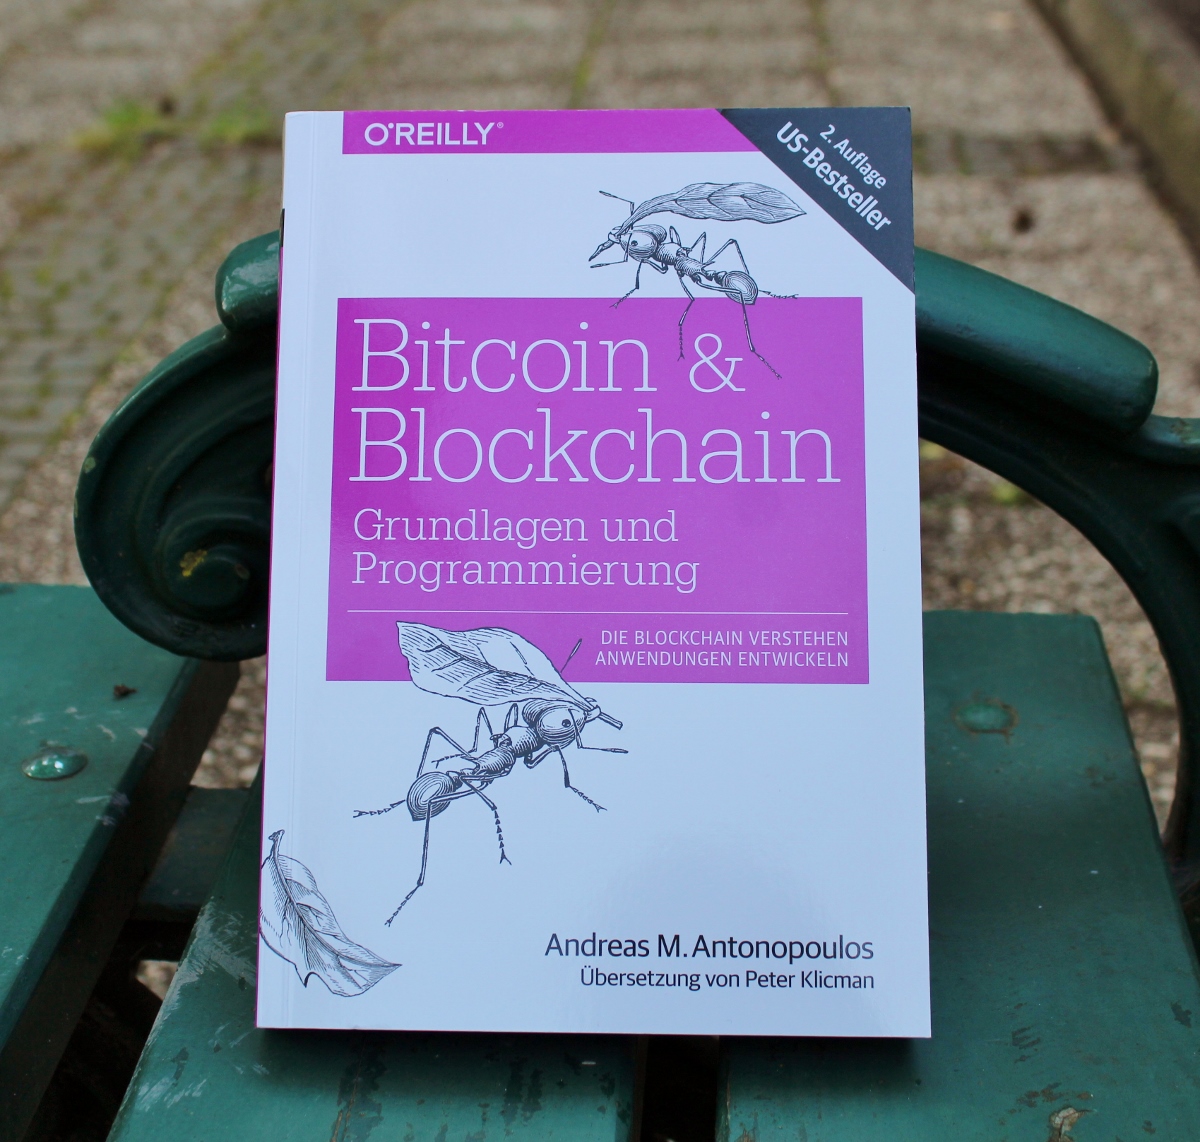 Bitcoin & Blockchain - Grundlagen und Programmierung